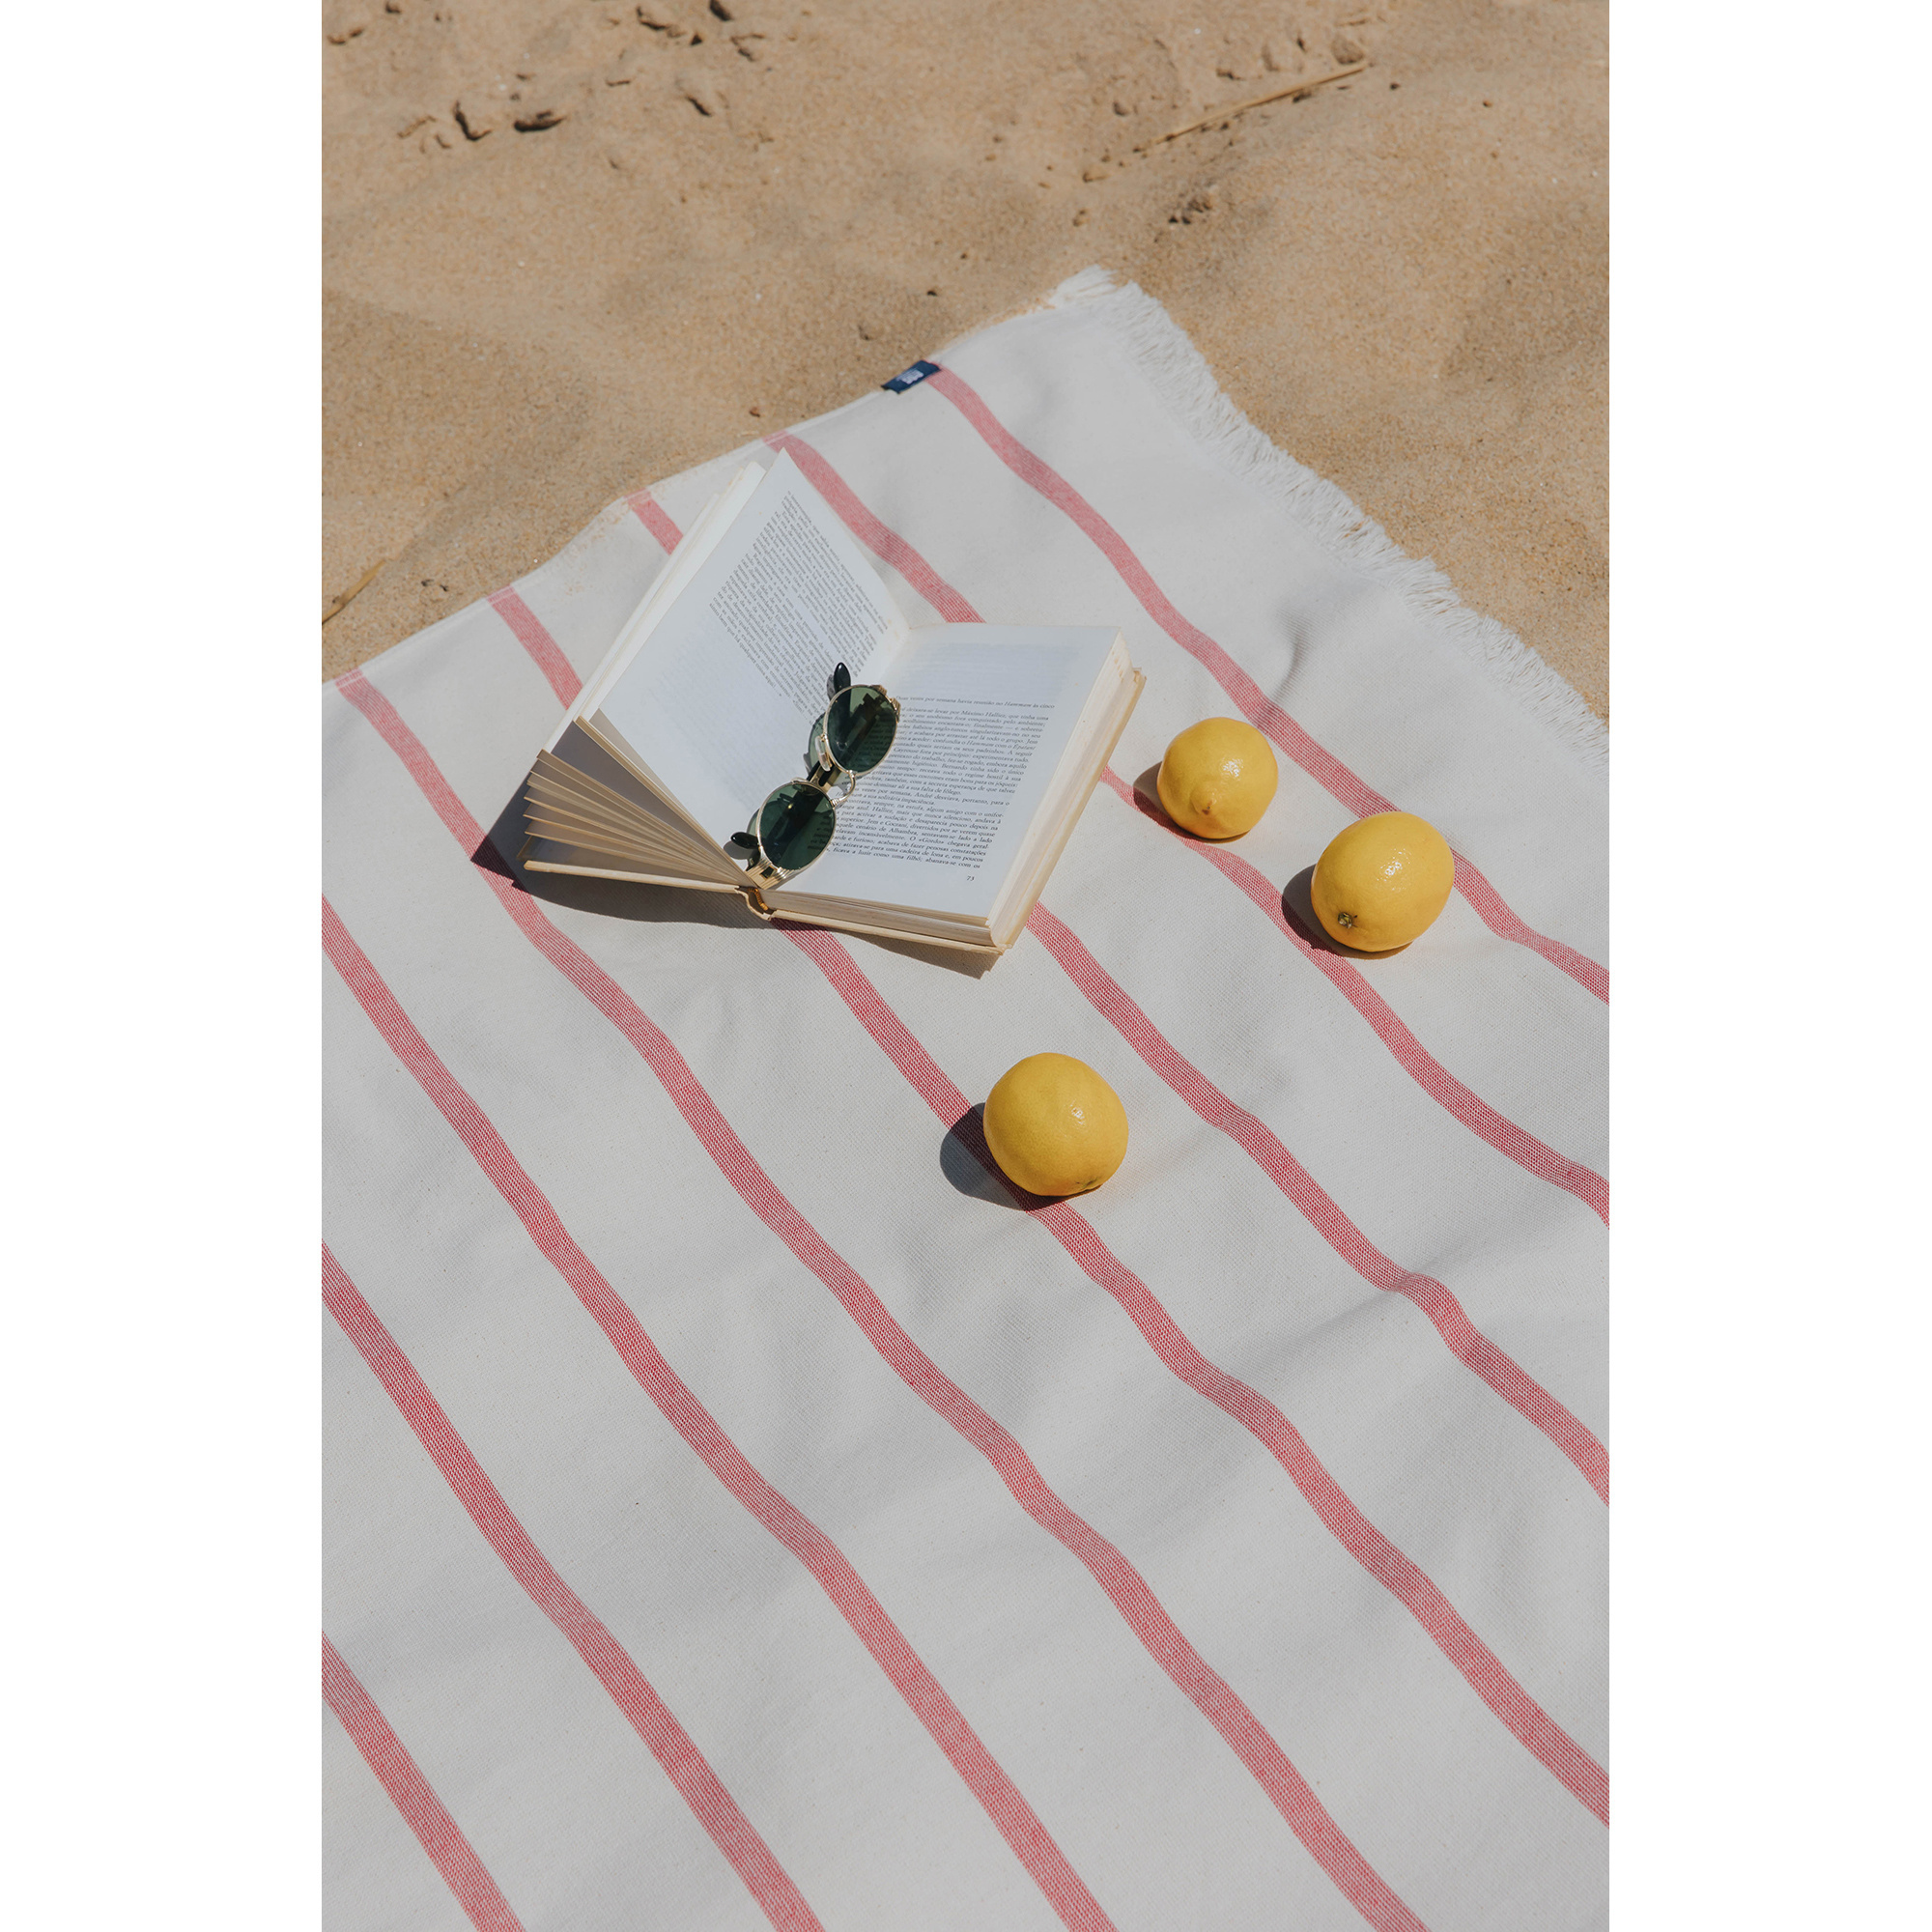 Torres Novas 1845 Beach towel Boa-Nova, Red - 70 x 130 cm - 100% Cotton